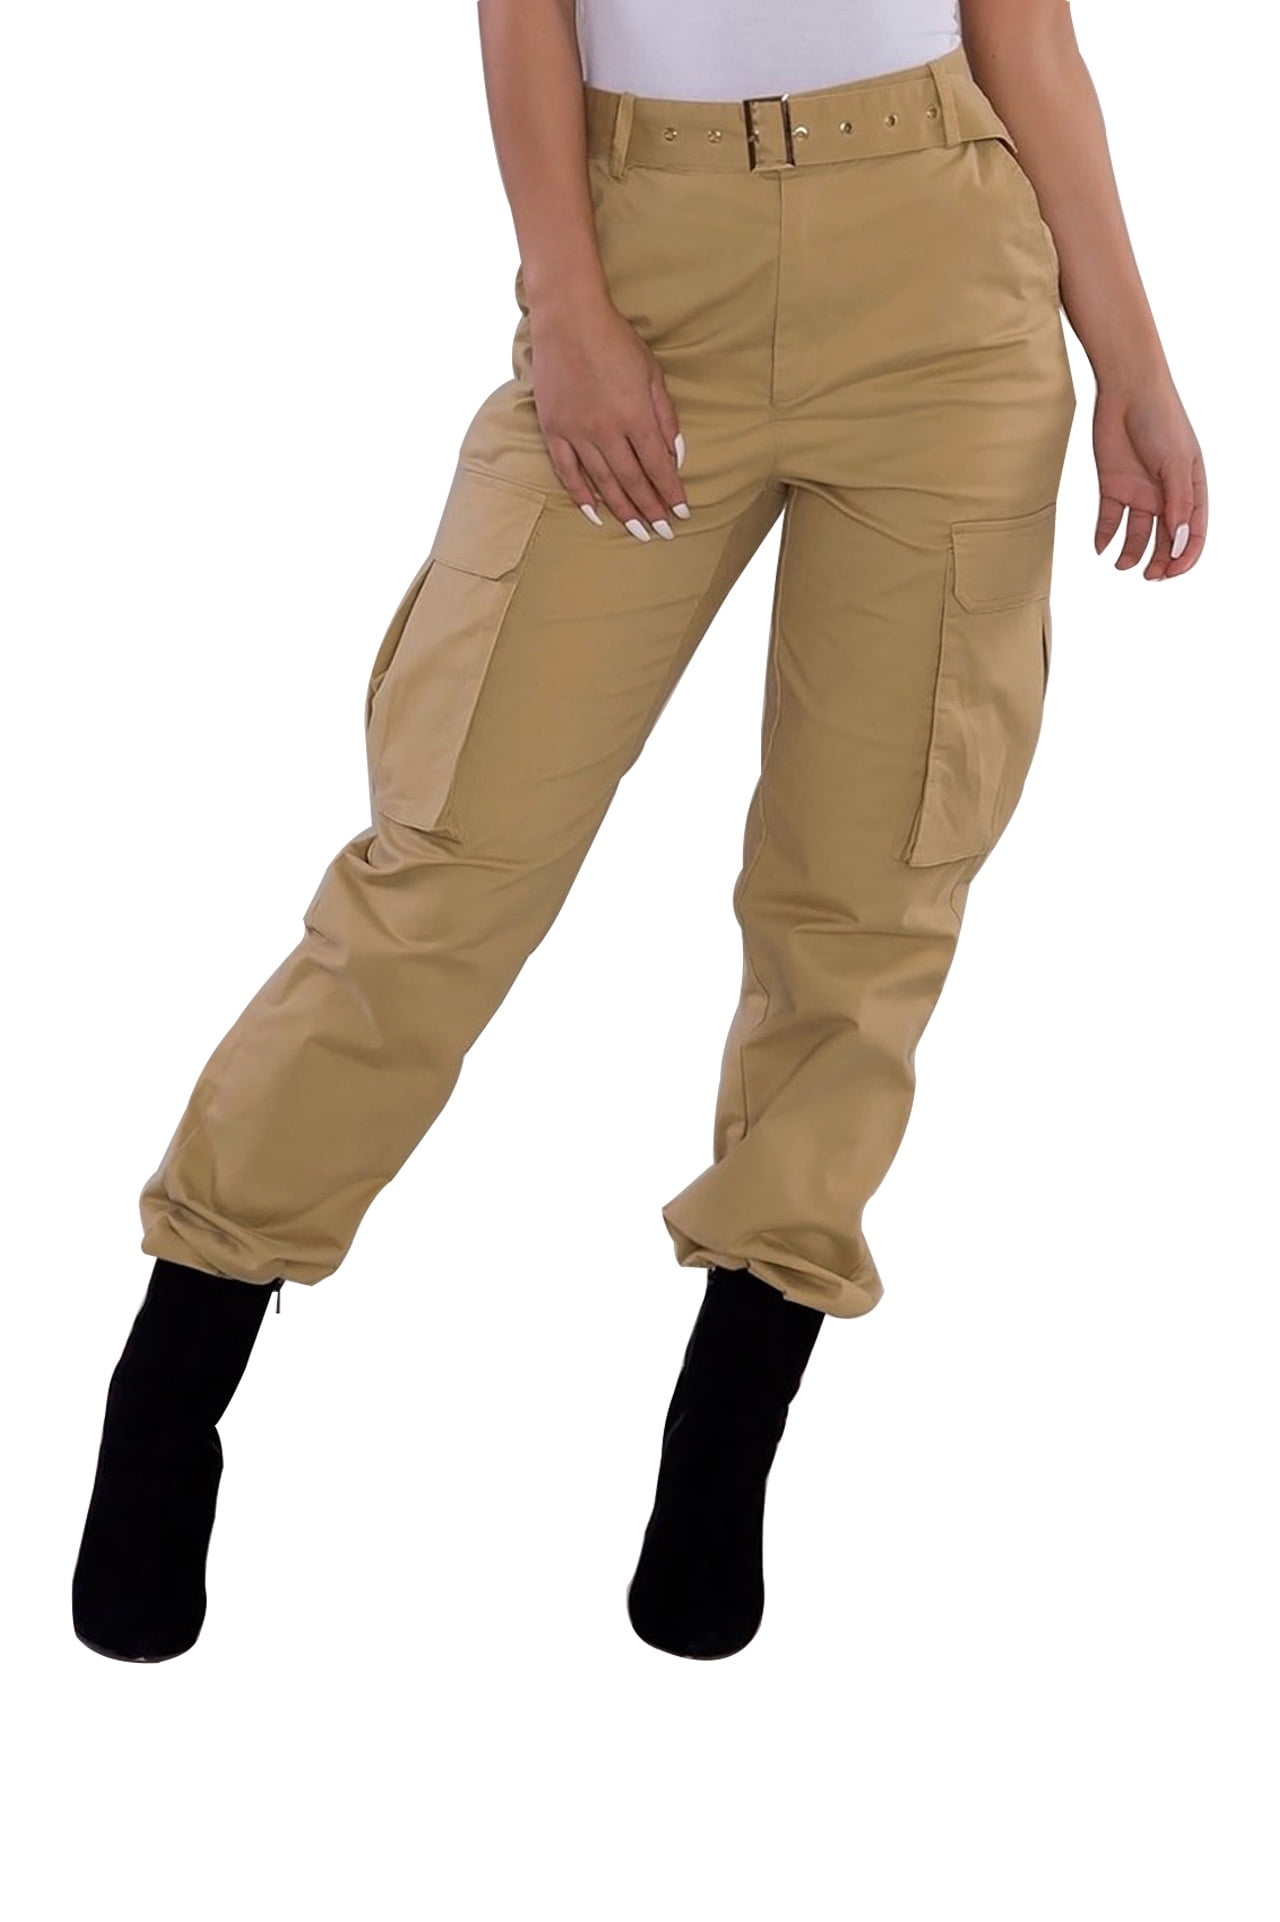 fashionable khaki pants